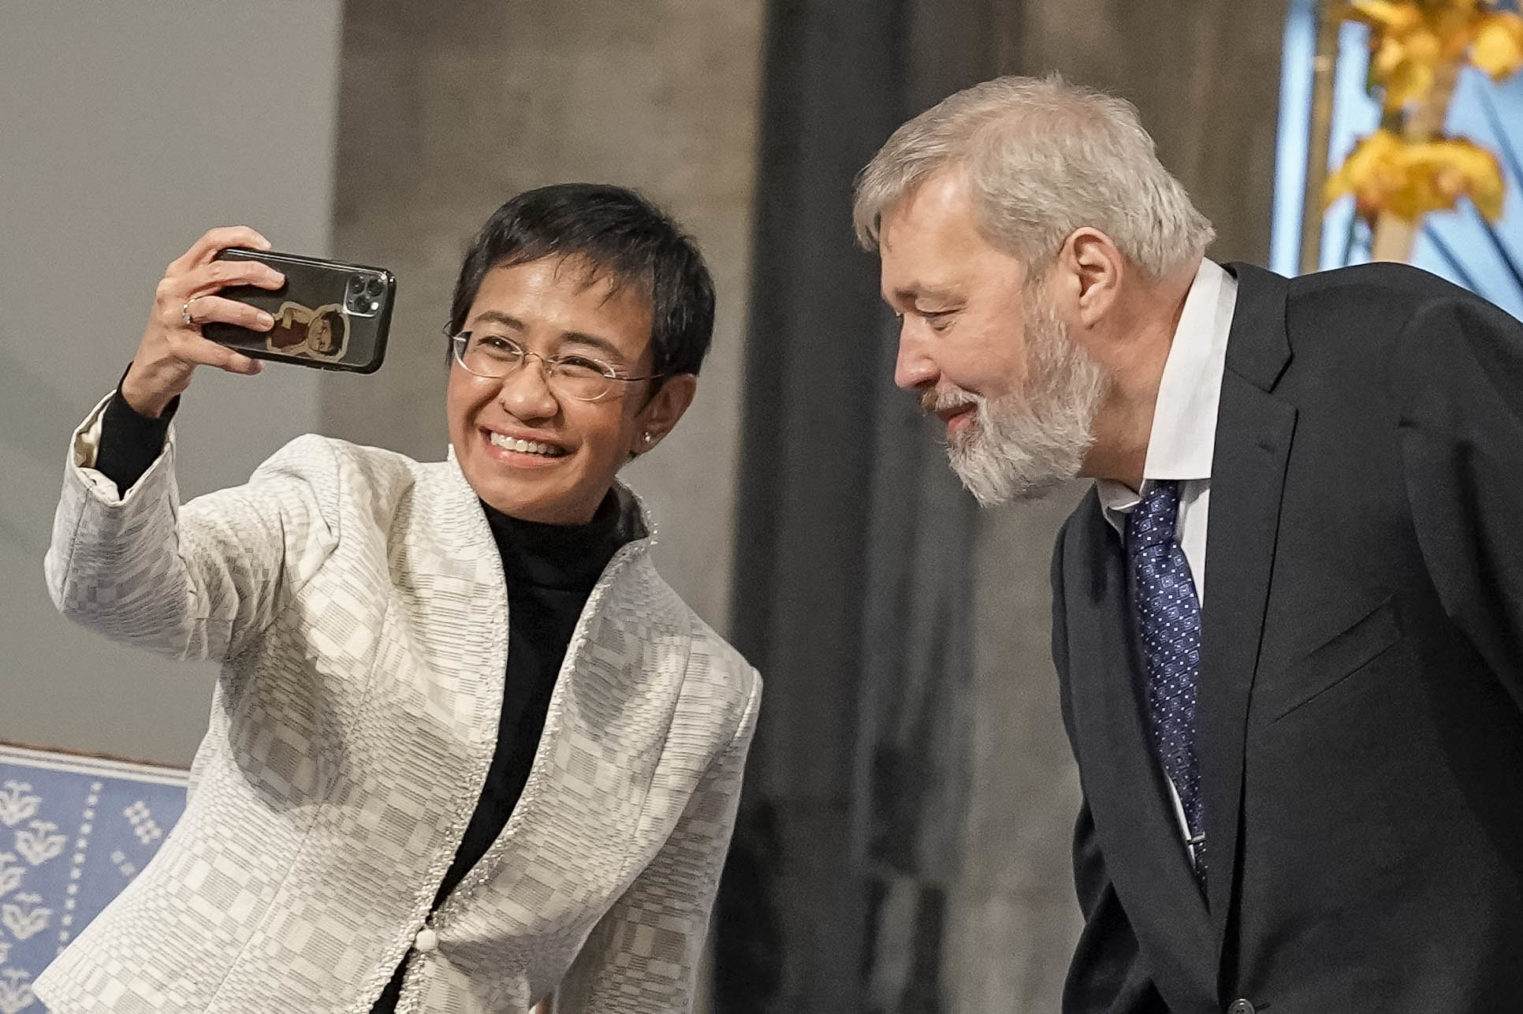 De to nobelprisvinnerne sammen i rådhuset. Hun holder opp telefonen og tar en selfie av dem begge.